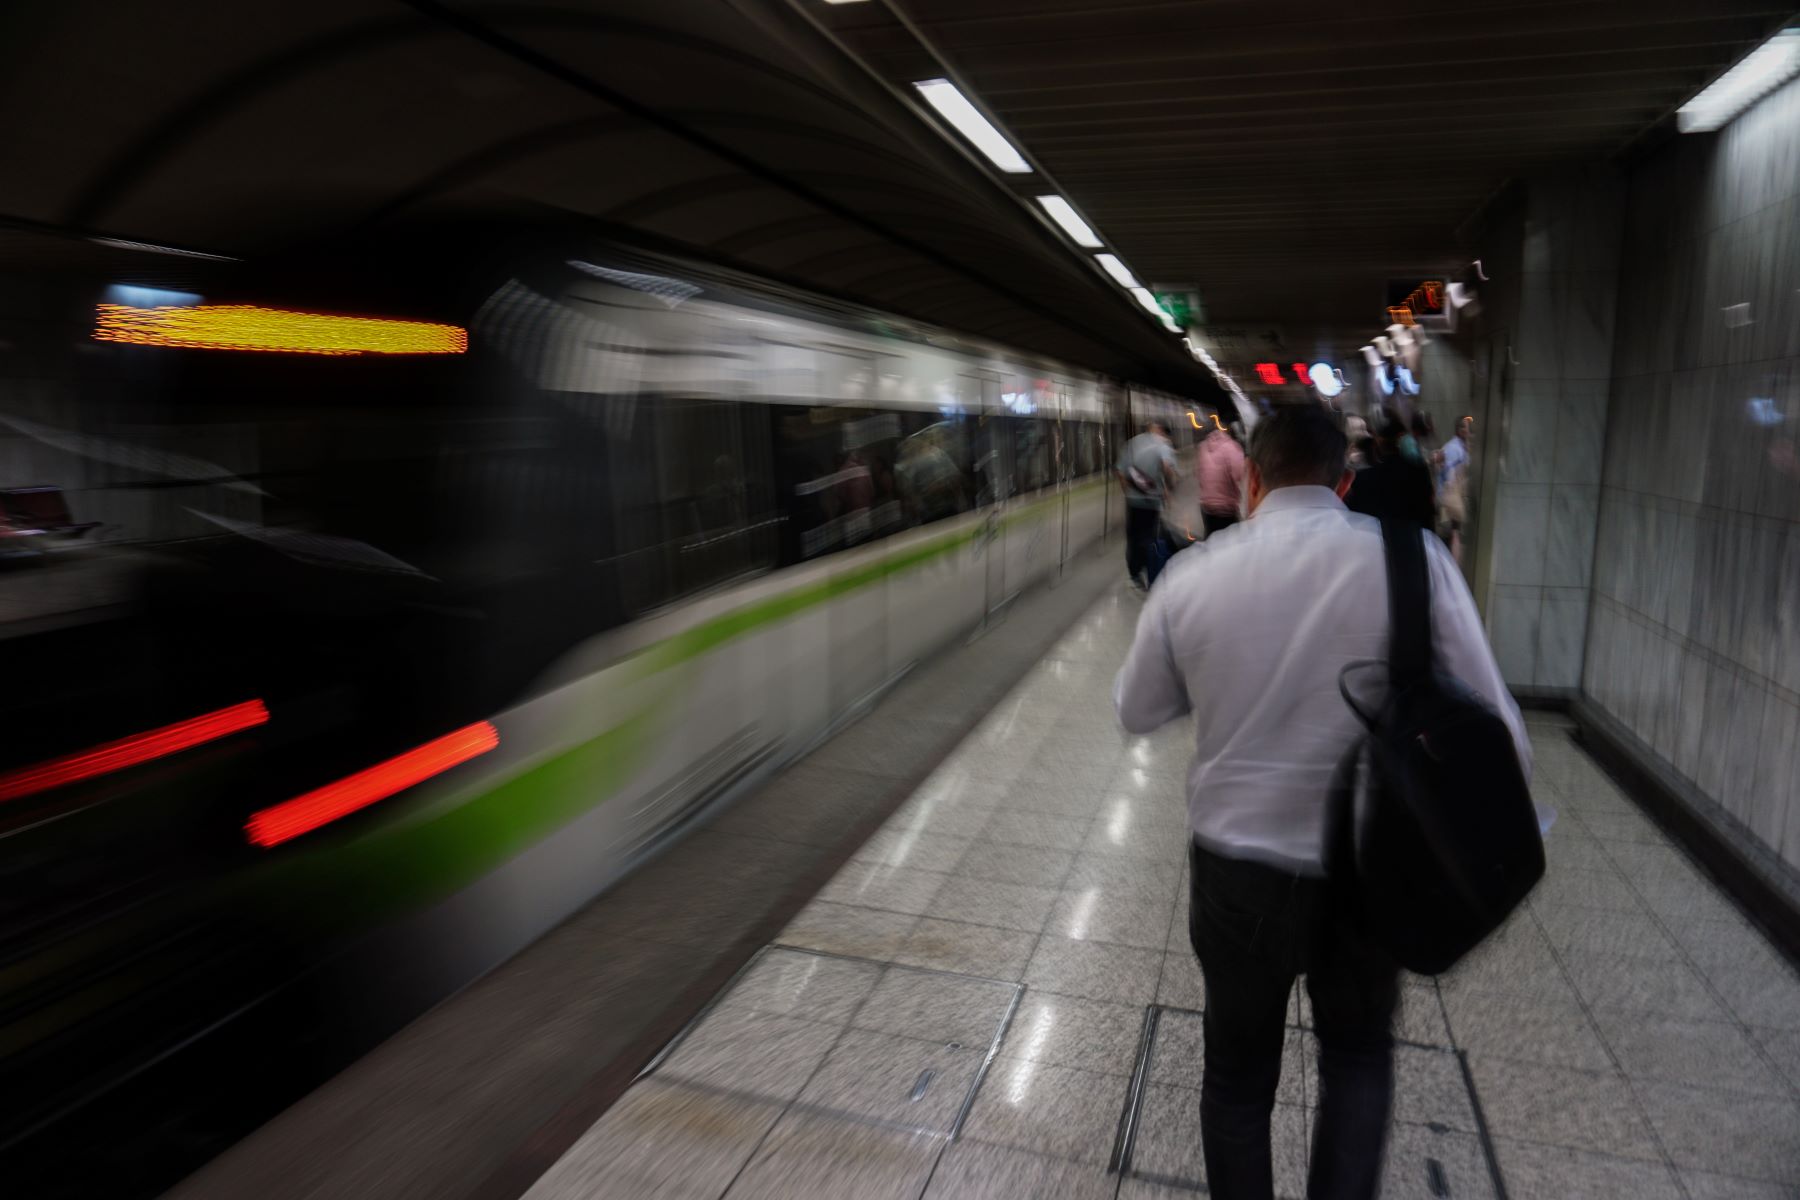 Μετρό “Αγία Βαρβάρα” κλειστό: Ποιες μέρες θα είναι εκτός λειτουργίας